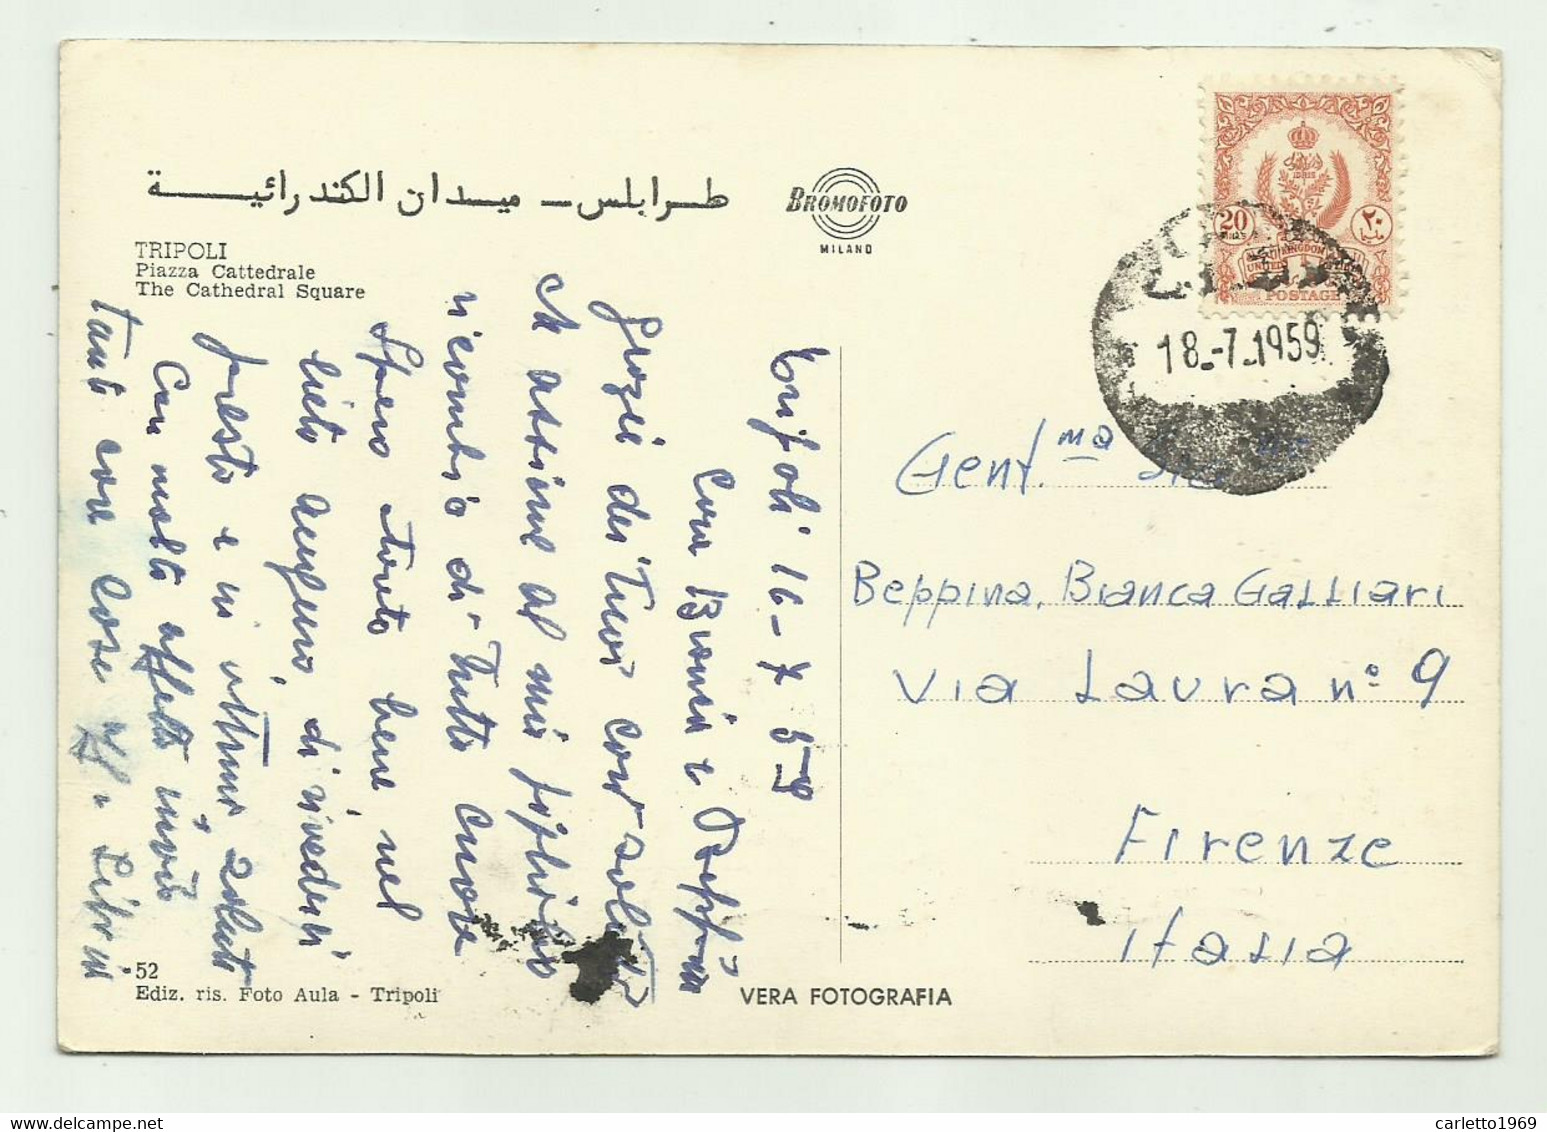 TRIPOLI - PIAZZA CATTEDRALE 1959 VIAGGIATA   FG - Libia